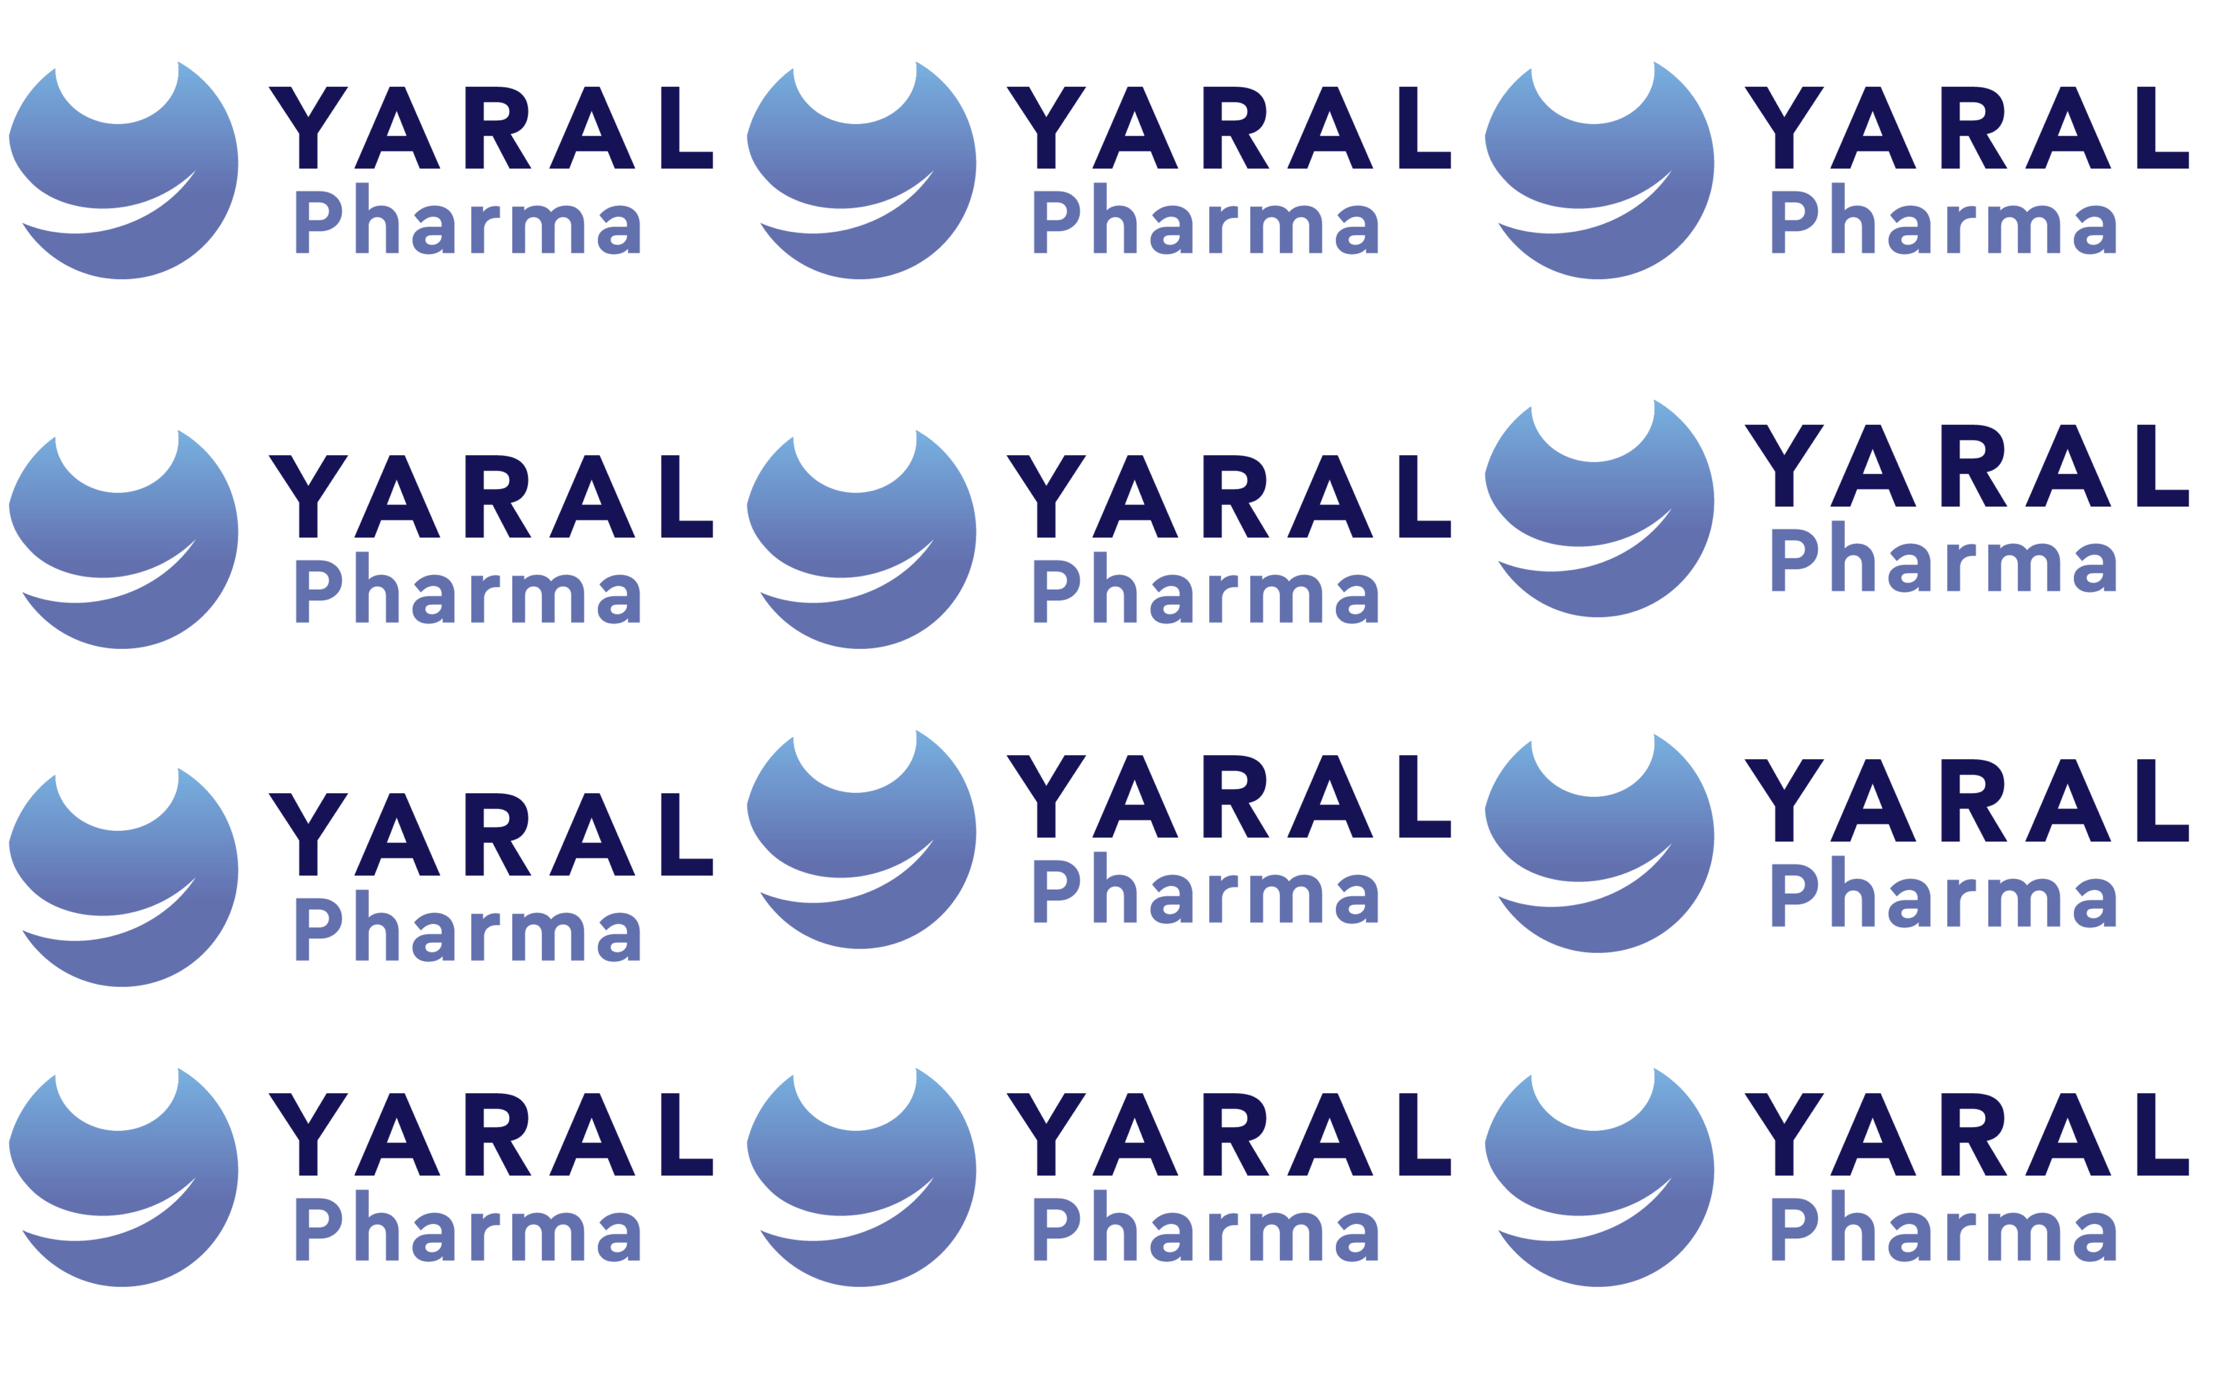 Yaral Pharma